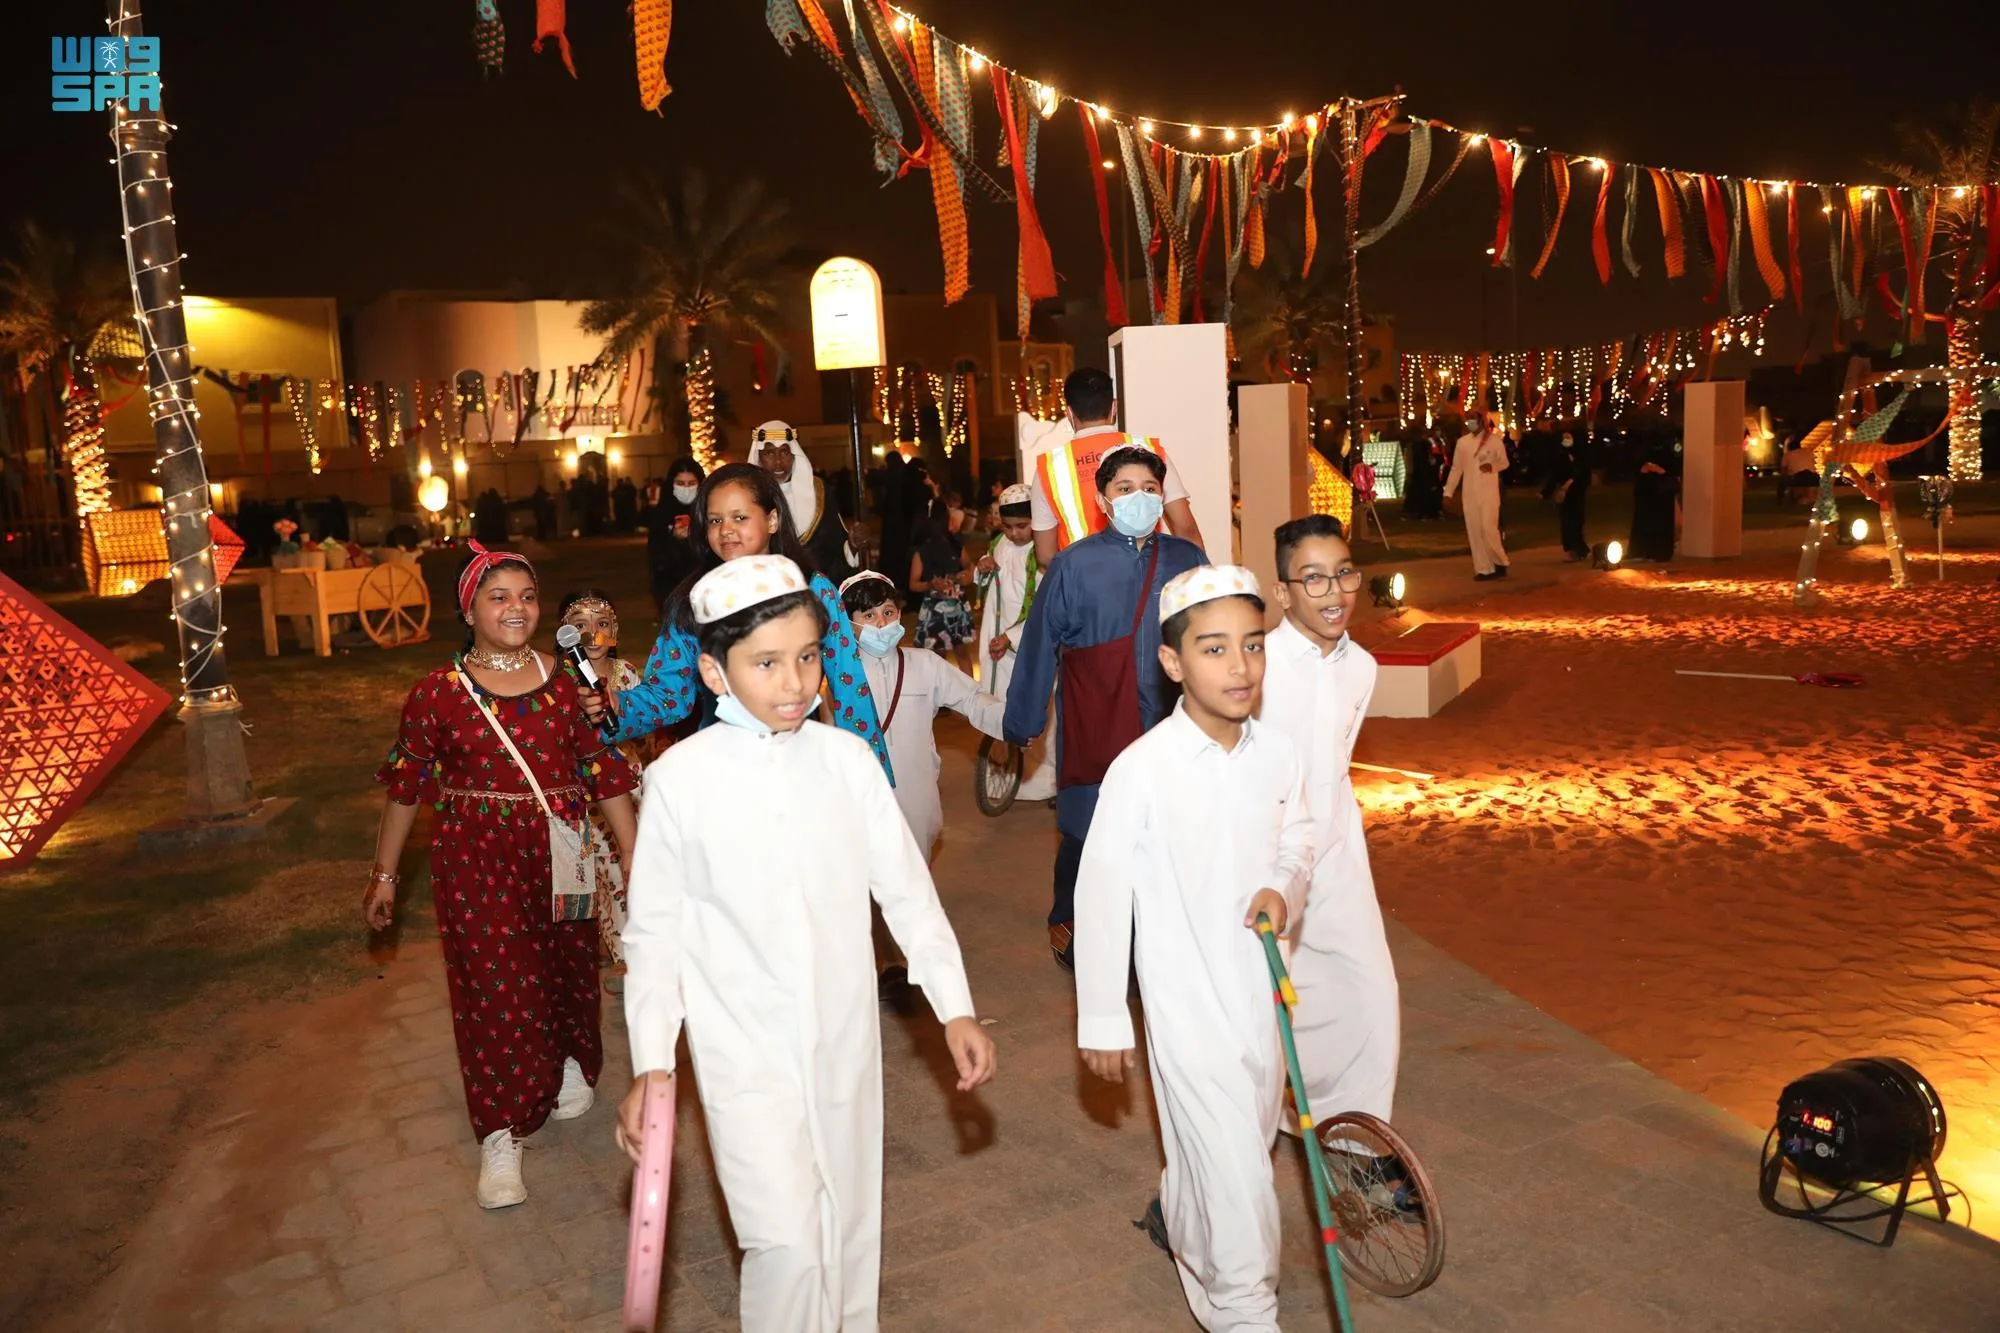 إحياء تراث شعبي قديم: عودة حوامات العيد في المملكة العربية السعودية 